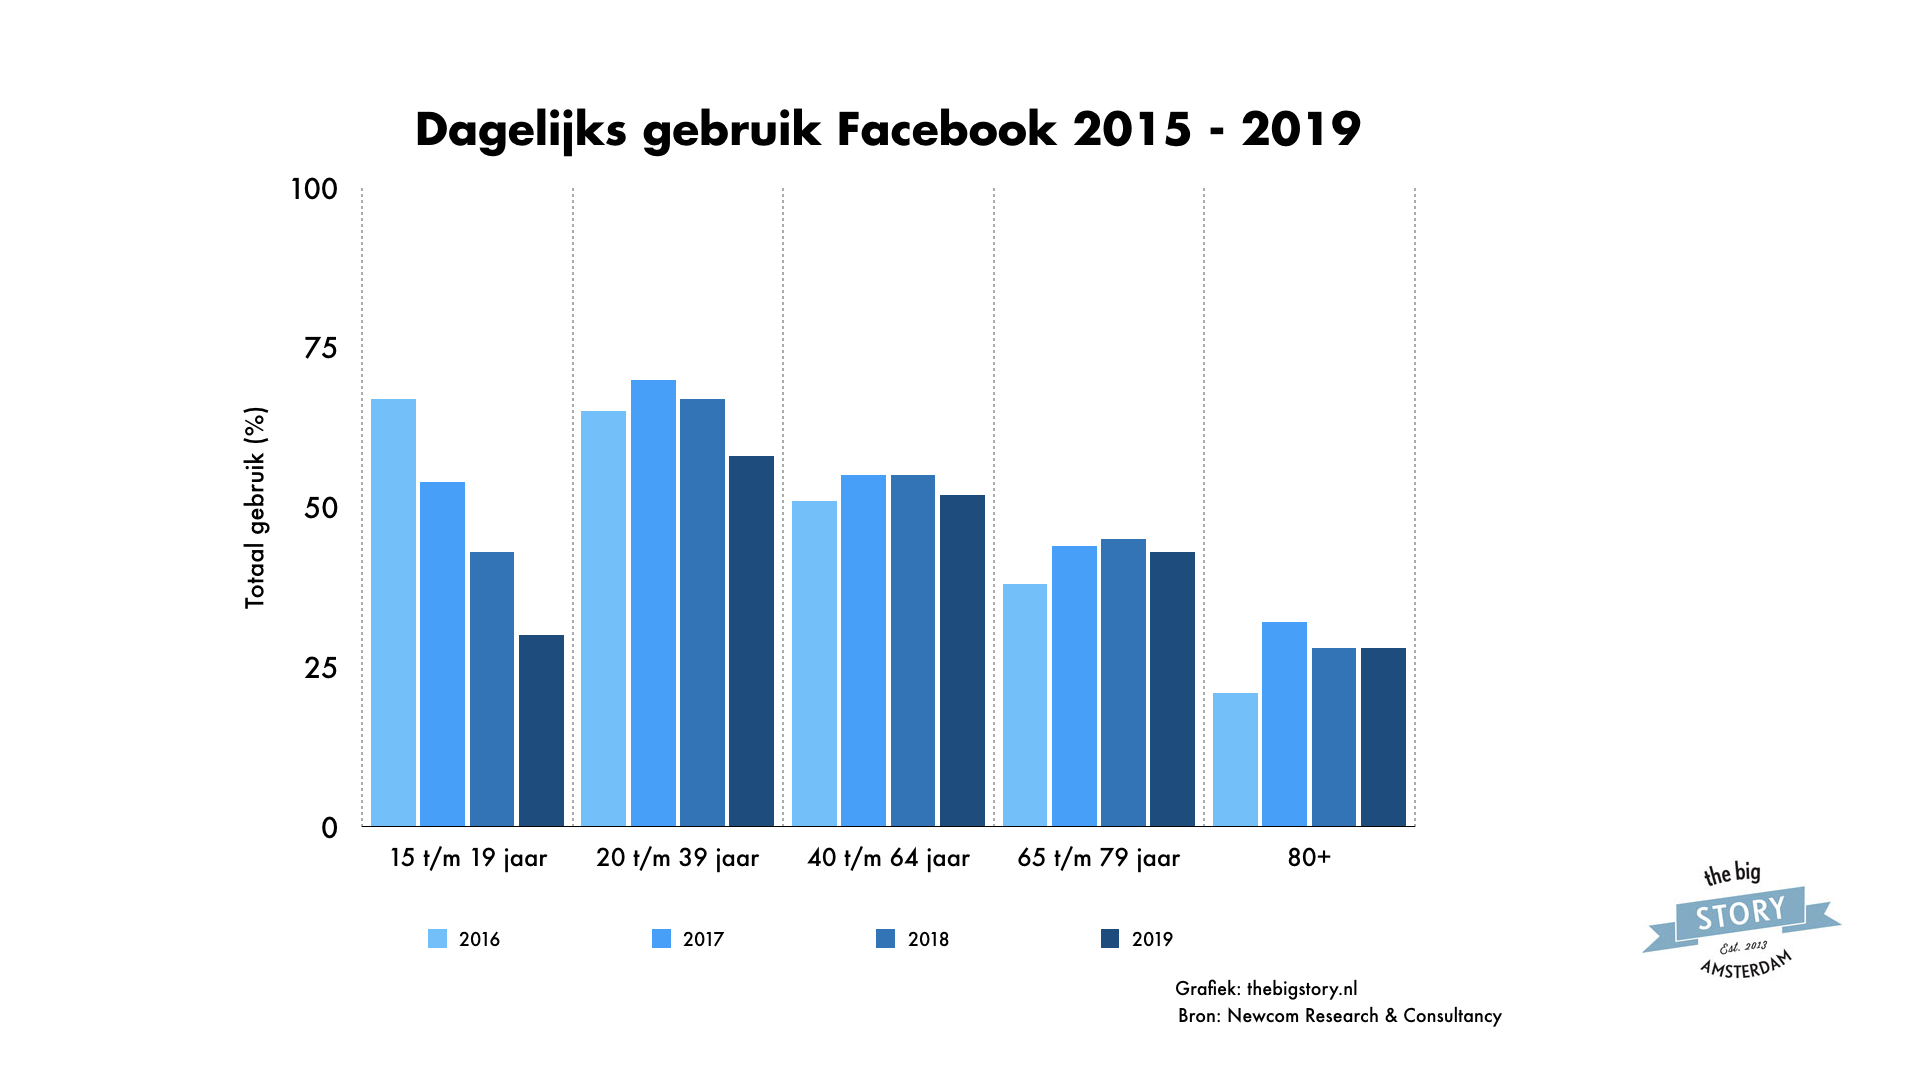 Dagelijks Facebook gebruik in Nederland daalt 2016 - 2019